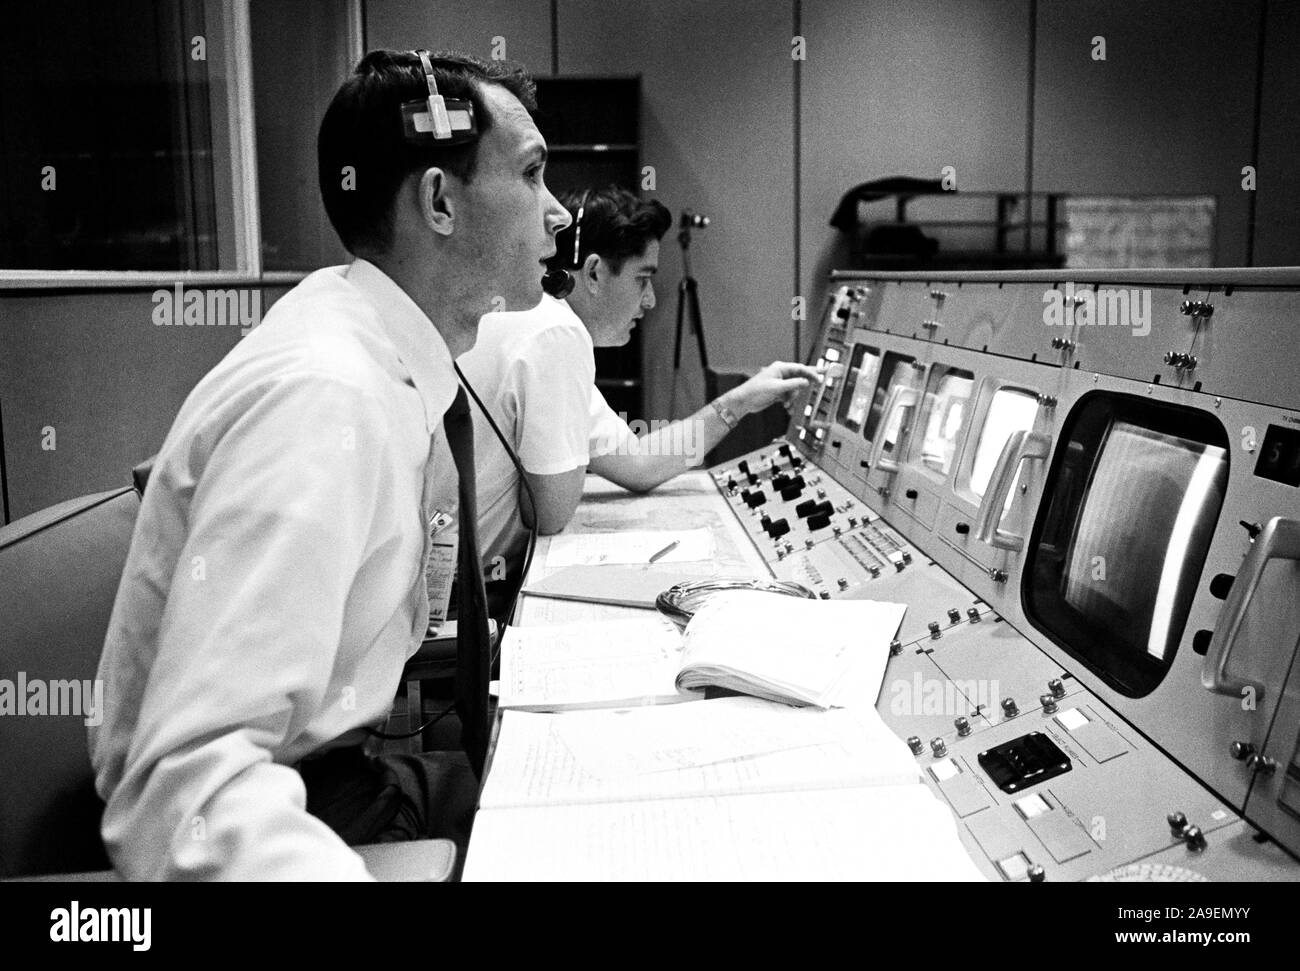 S68-50682 (octobre 1968) --- Bureau des affaires publiques (OAP) commentateur Douglas K. Ward est photographié à sa console dans la salle de contrôle des opérations de Mission (MOCR) dans le centre de contrôle de mission au Centre spatial Johnson de la NASA pendant le vol d'Apollo 7. Banque D'Images